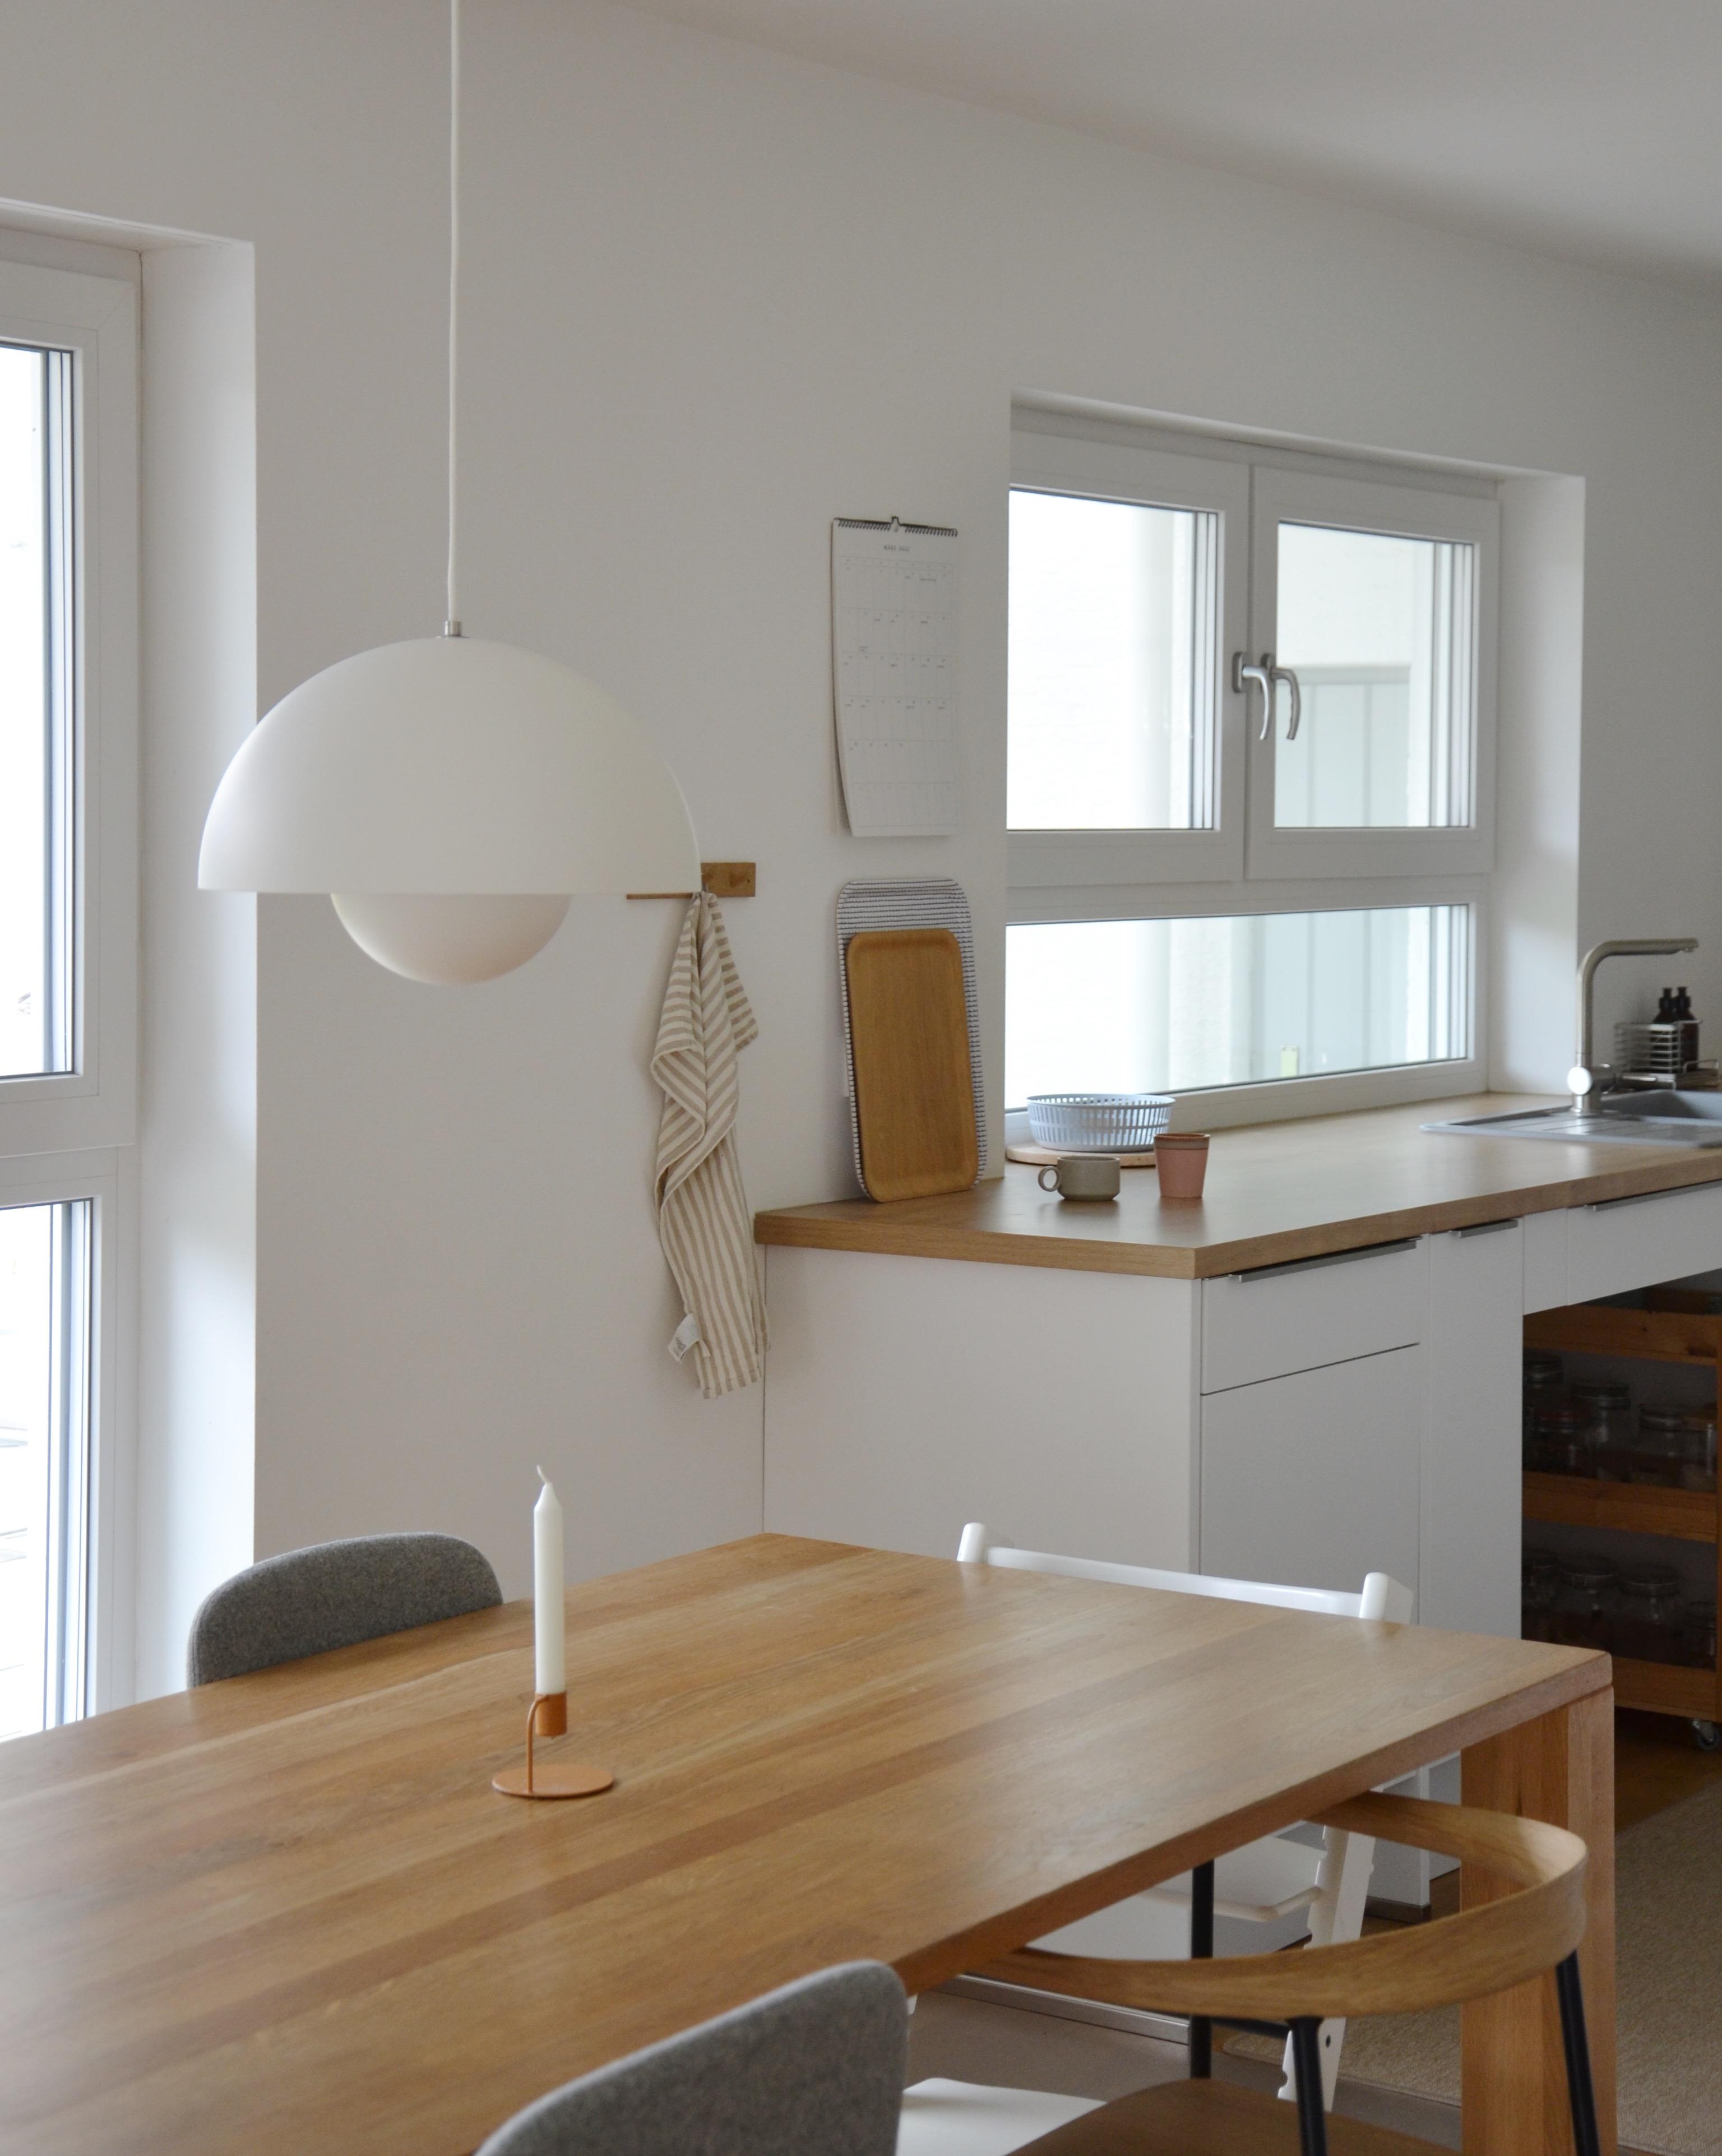 Eine kleine Homestory von unserem minimalistischen Zuhause.